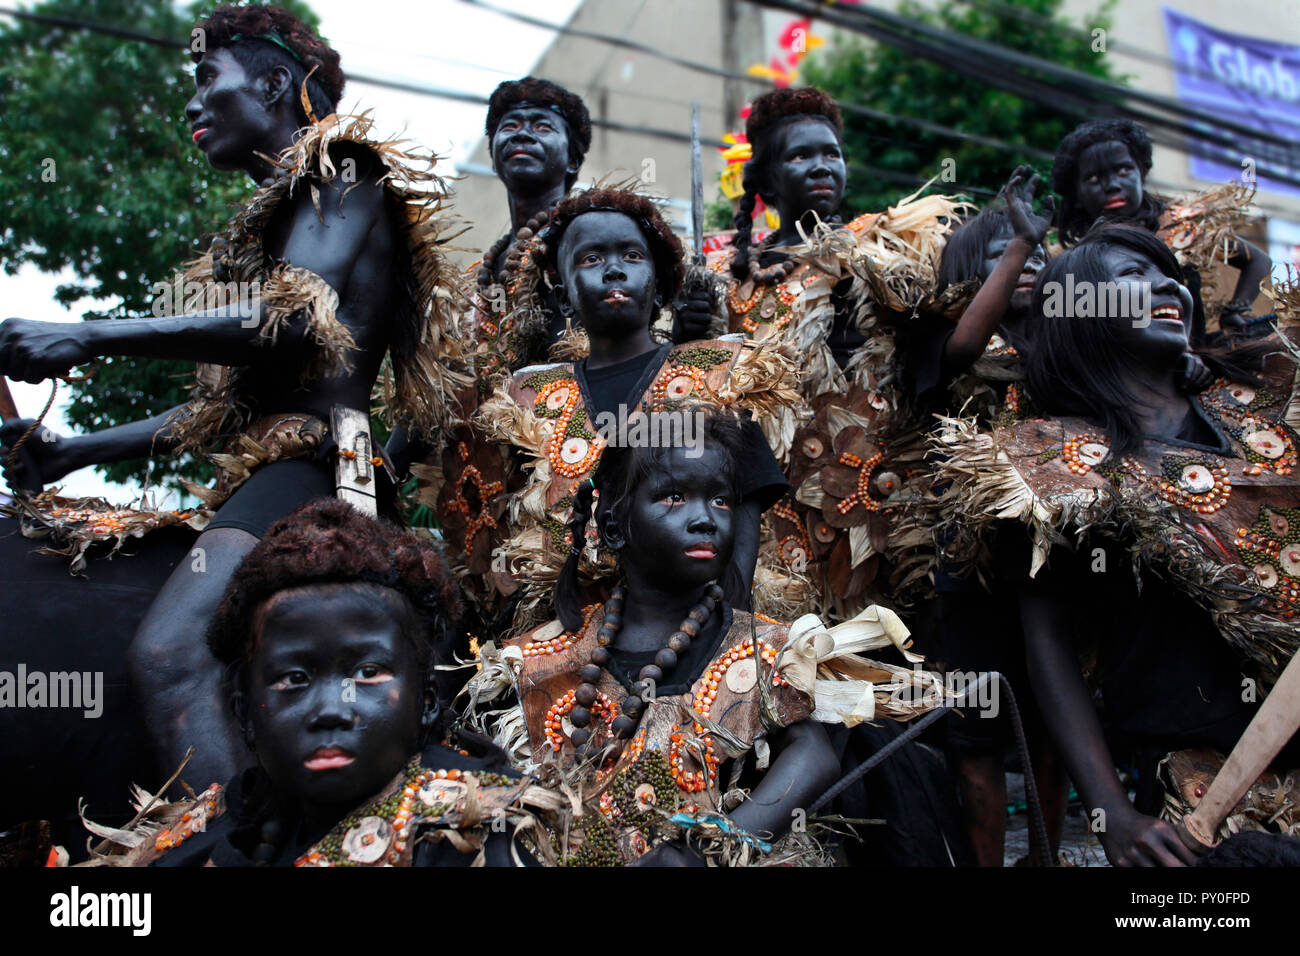 Les enfants avec la peau peinte en noir dans une tribu de costumes à Atihan Ati, festival de Kalibo, Aklan, Philippines, l'île de Panay Banque D'Images